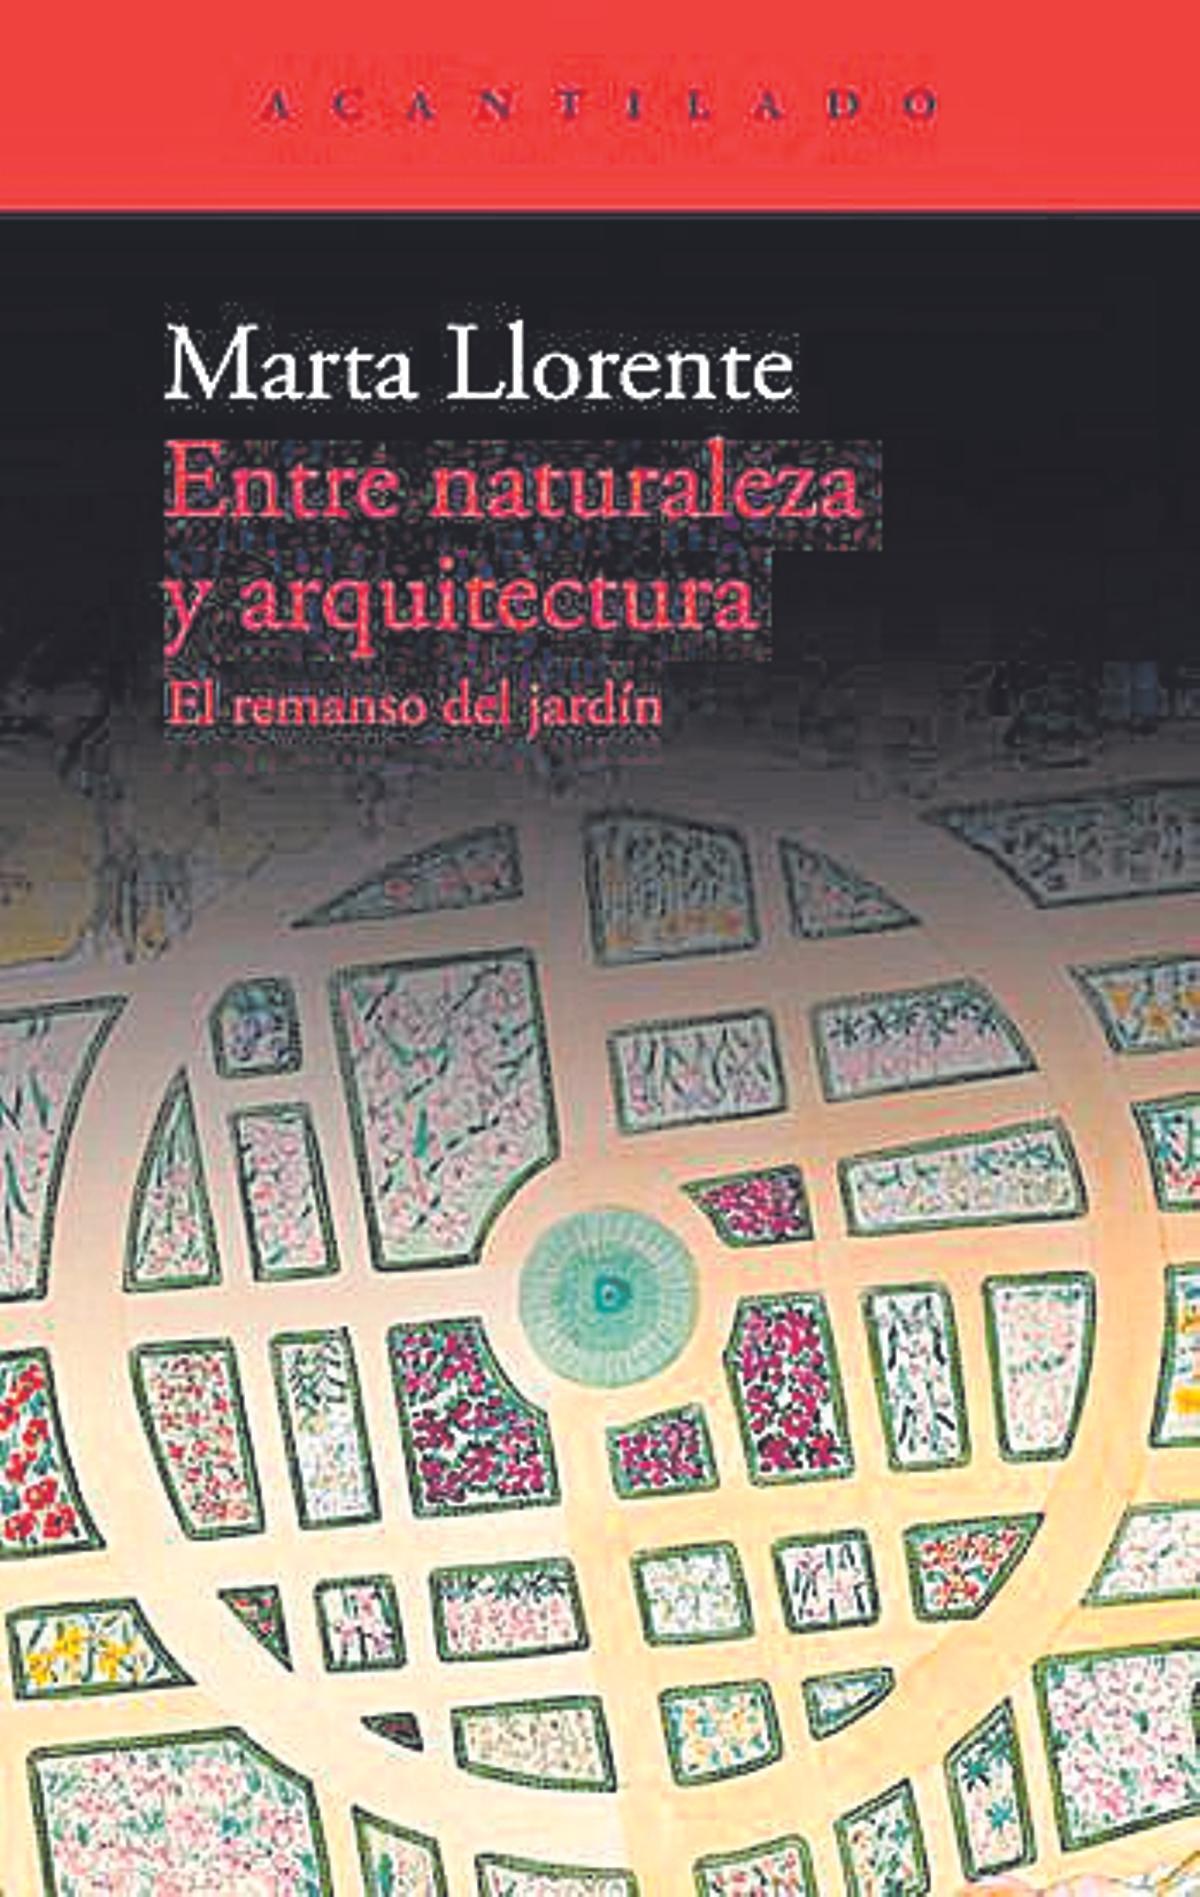 Marta Llorente  Entre naturaleza y arquitectura. El remanso del jardín   Acantilado  432 páginas / 25 euros